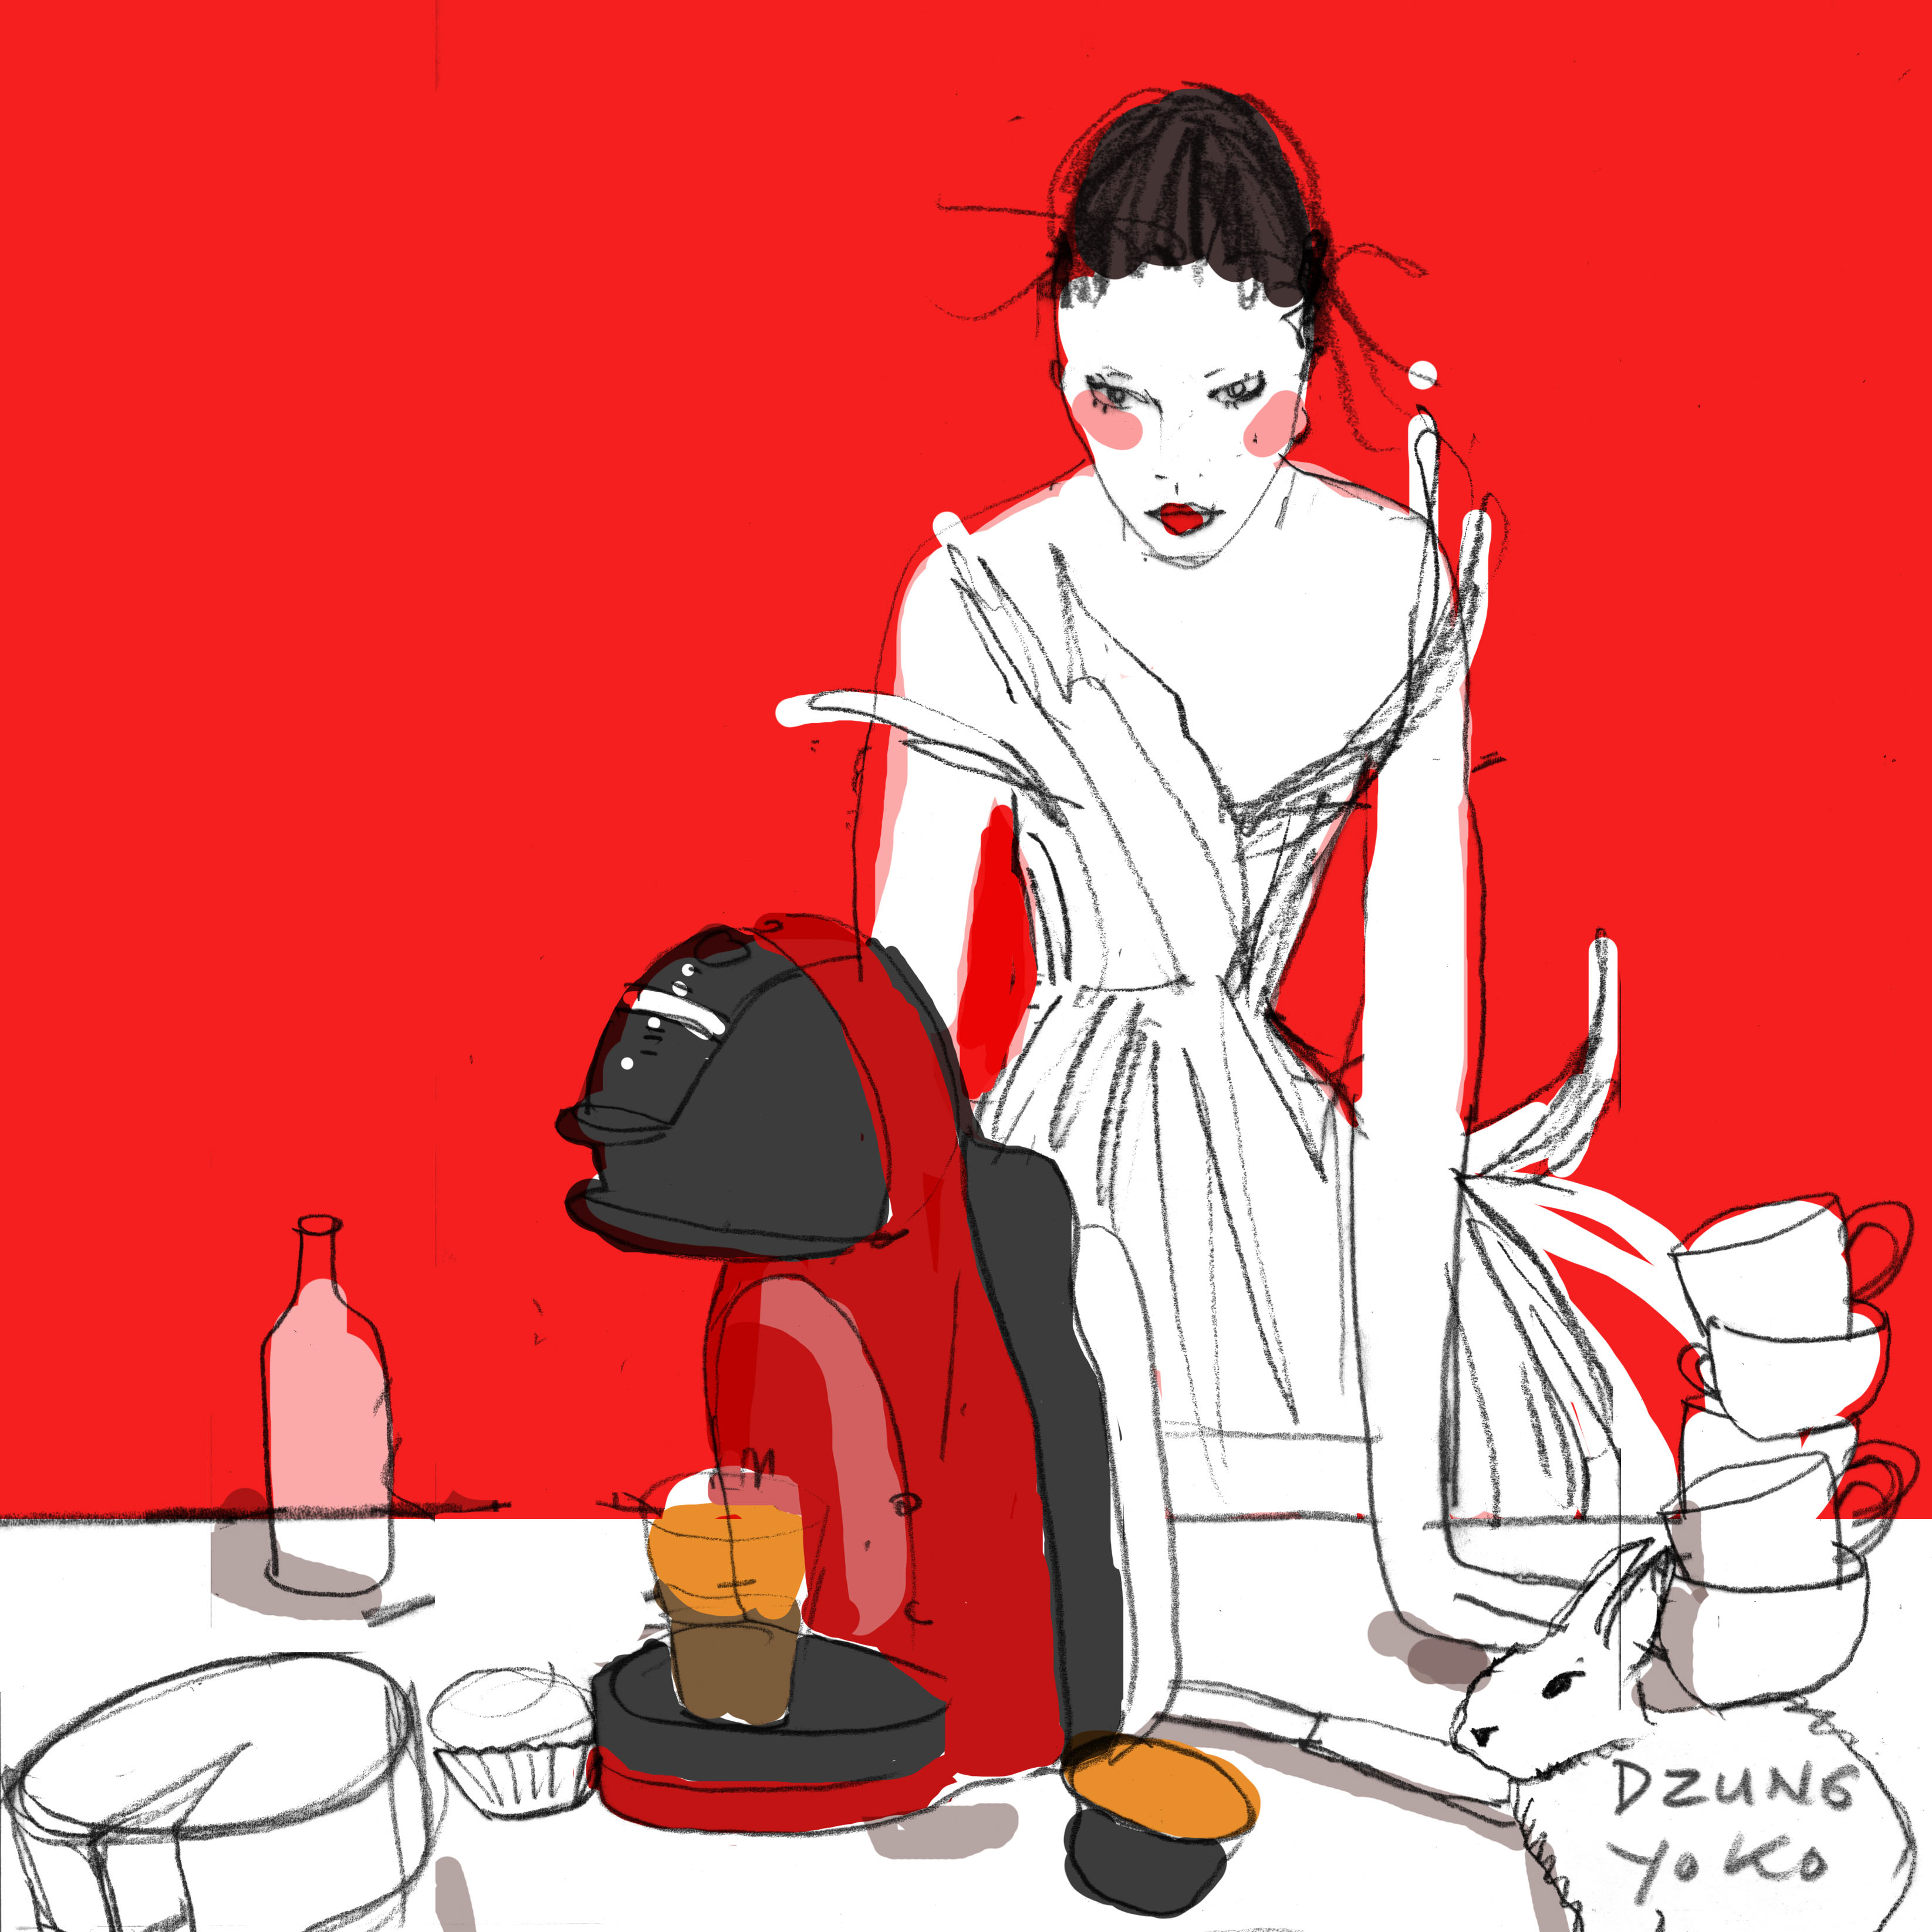 Bản sketch cô gái thanh lịch của Dzũng Yoko